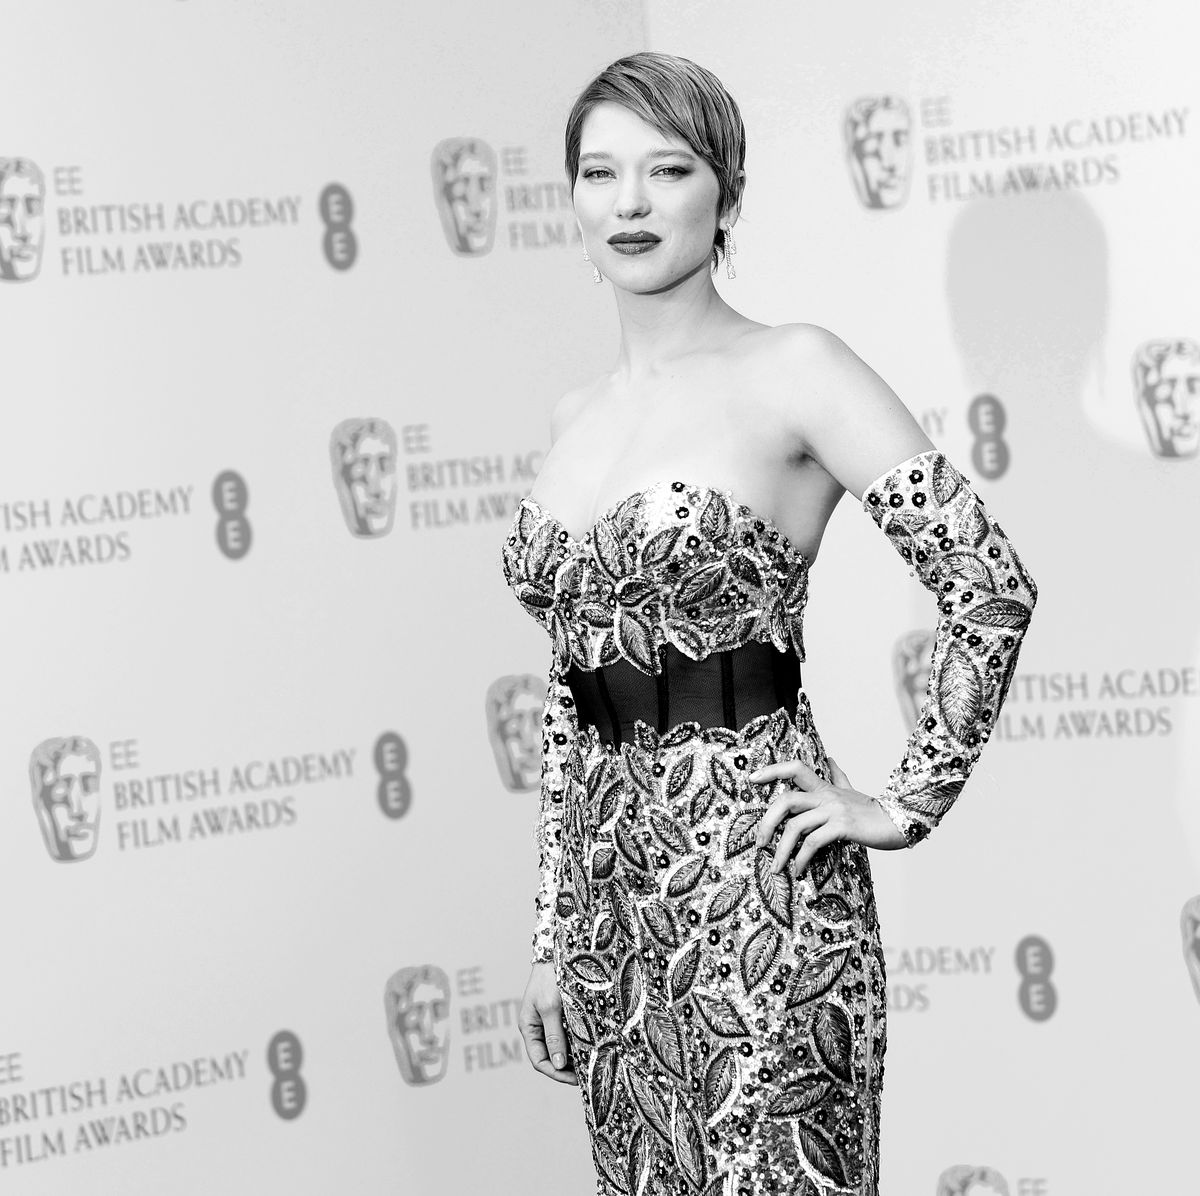 BAFTA 2022 Film Awards: Léa Seydoux wears glitzy black and silver